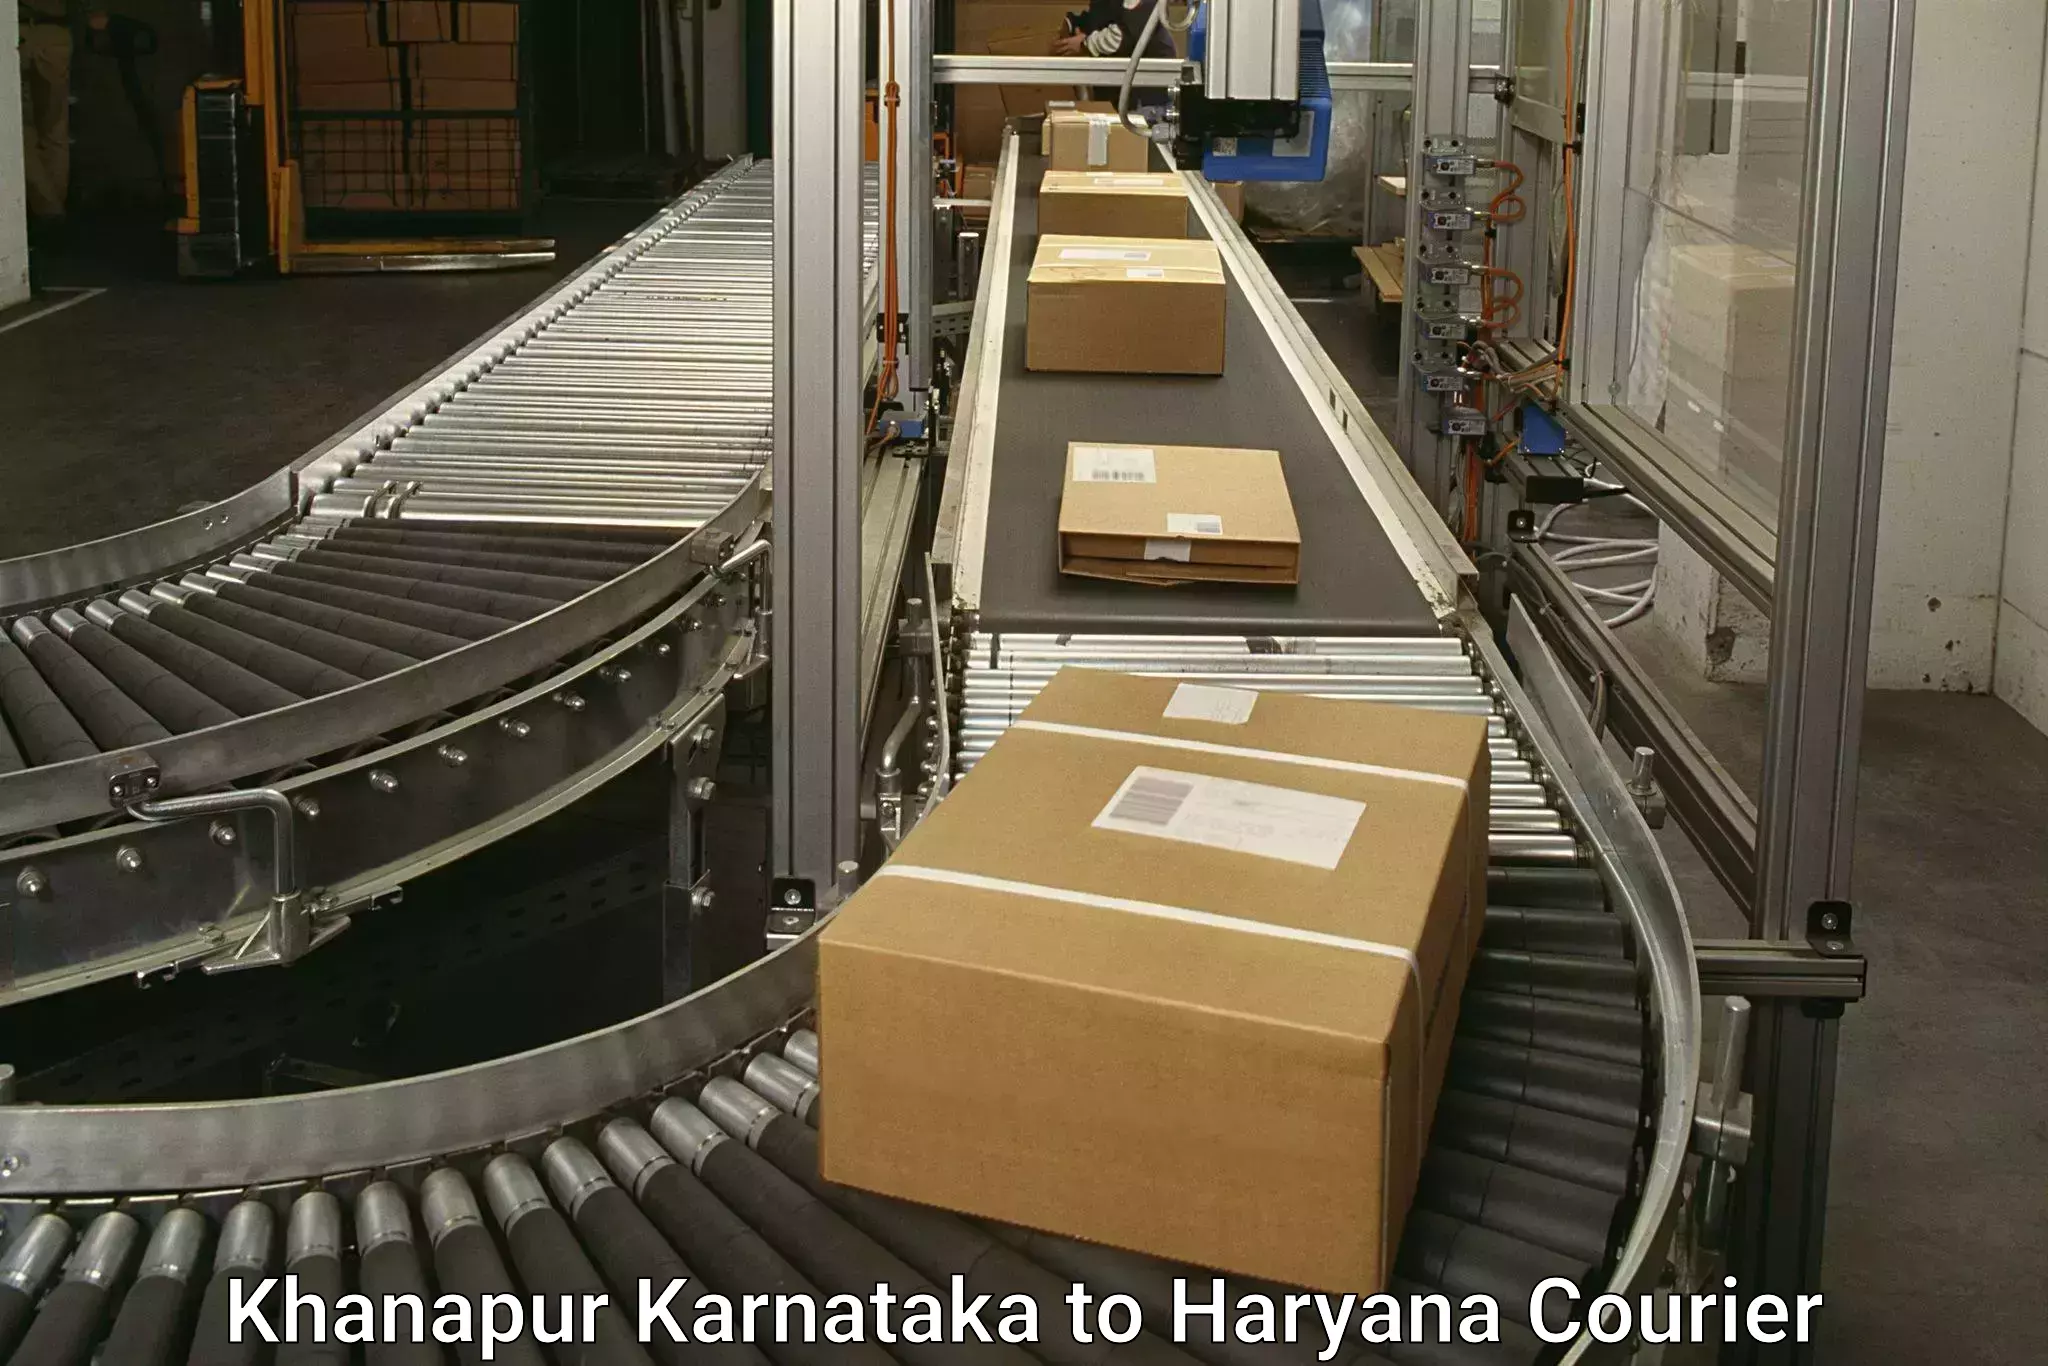 Individual parcel service Khanapur Karnataka to Haryana